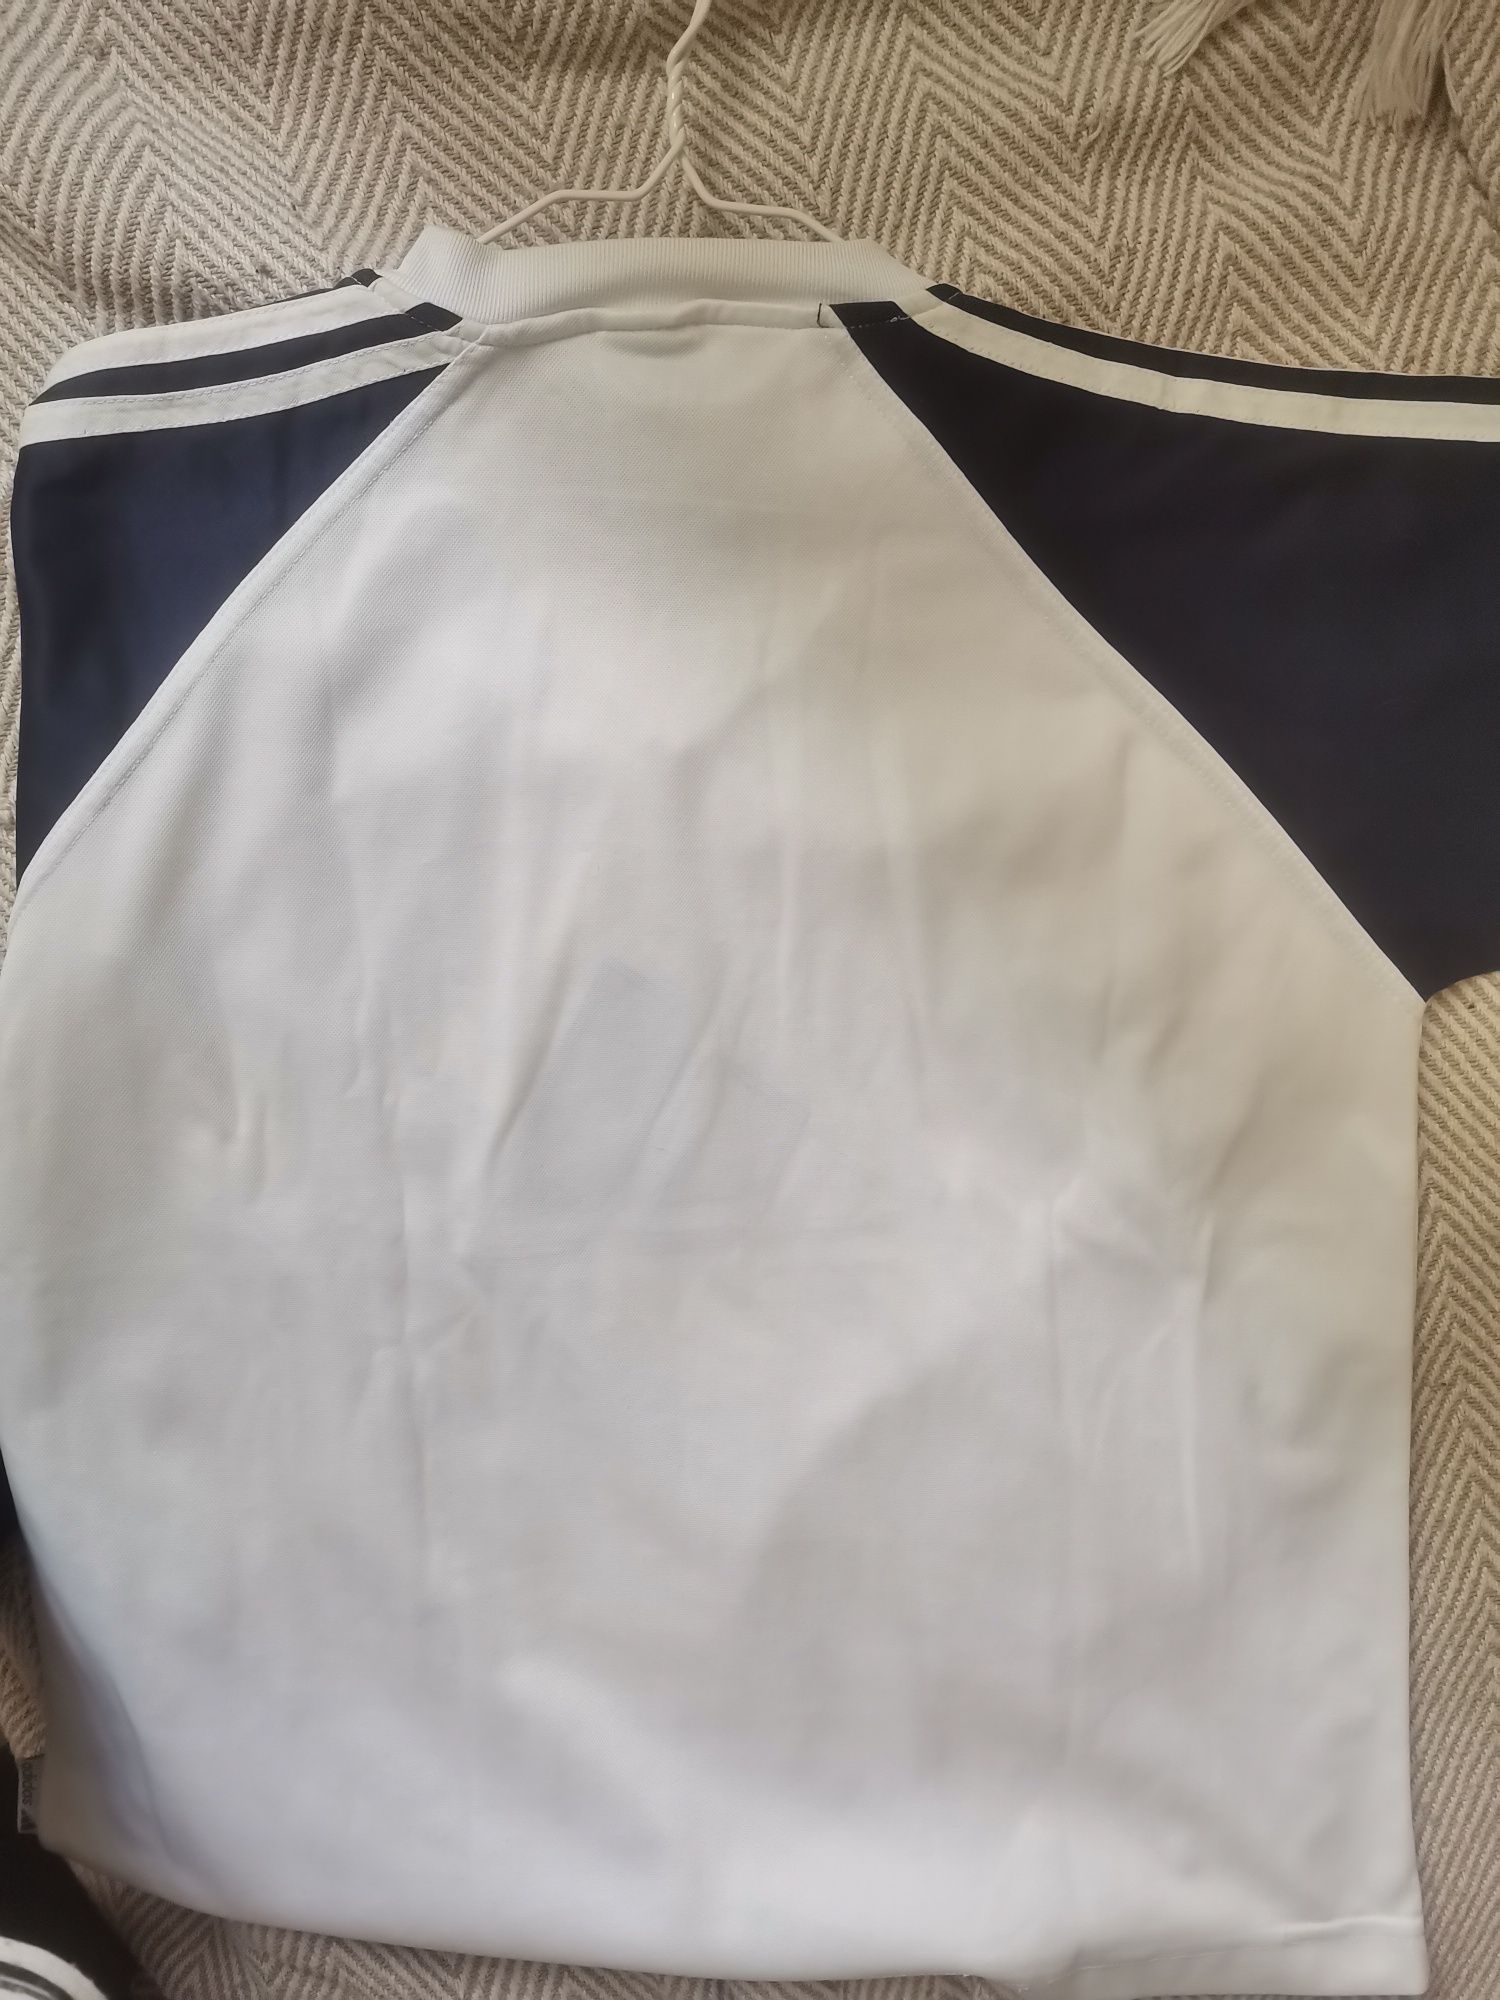 Мъжка тениска Adidas размер L